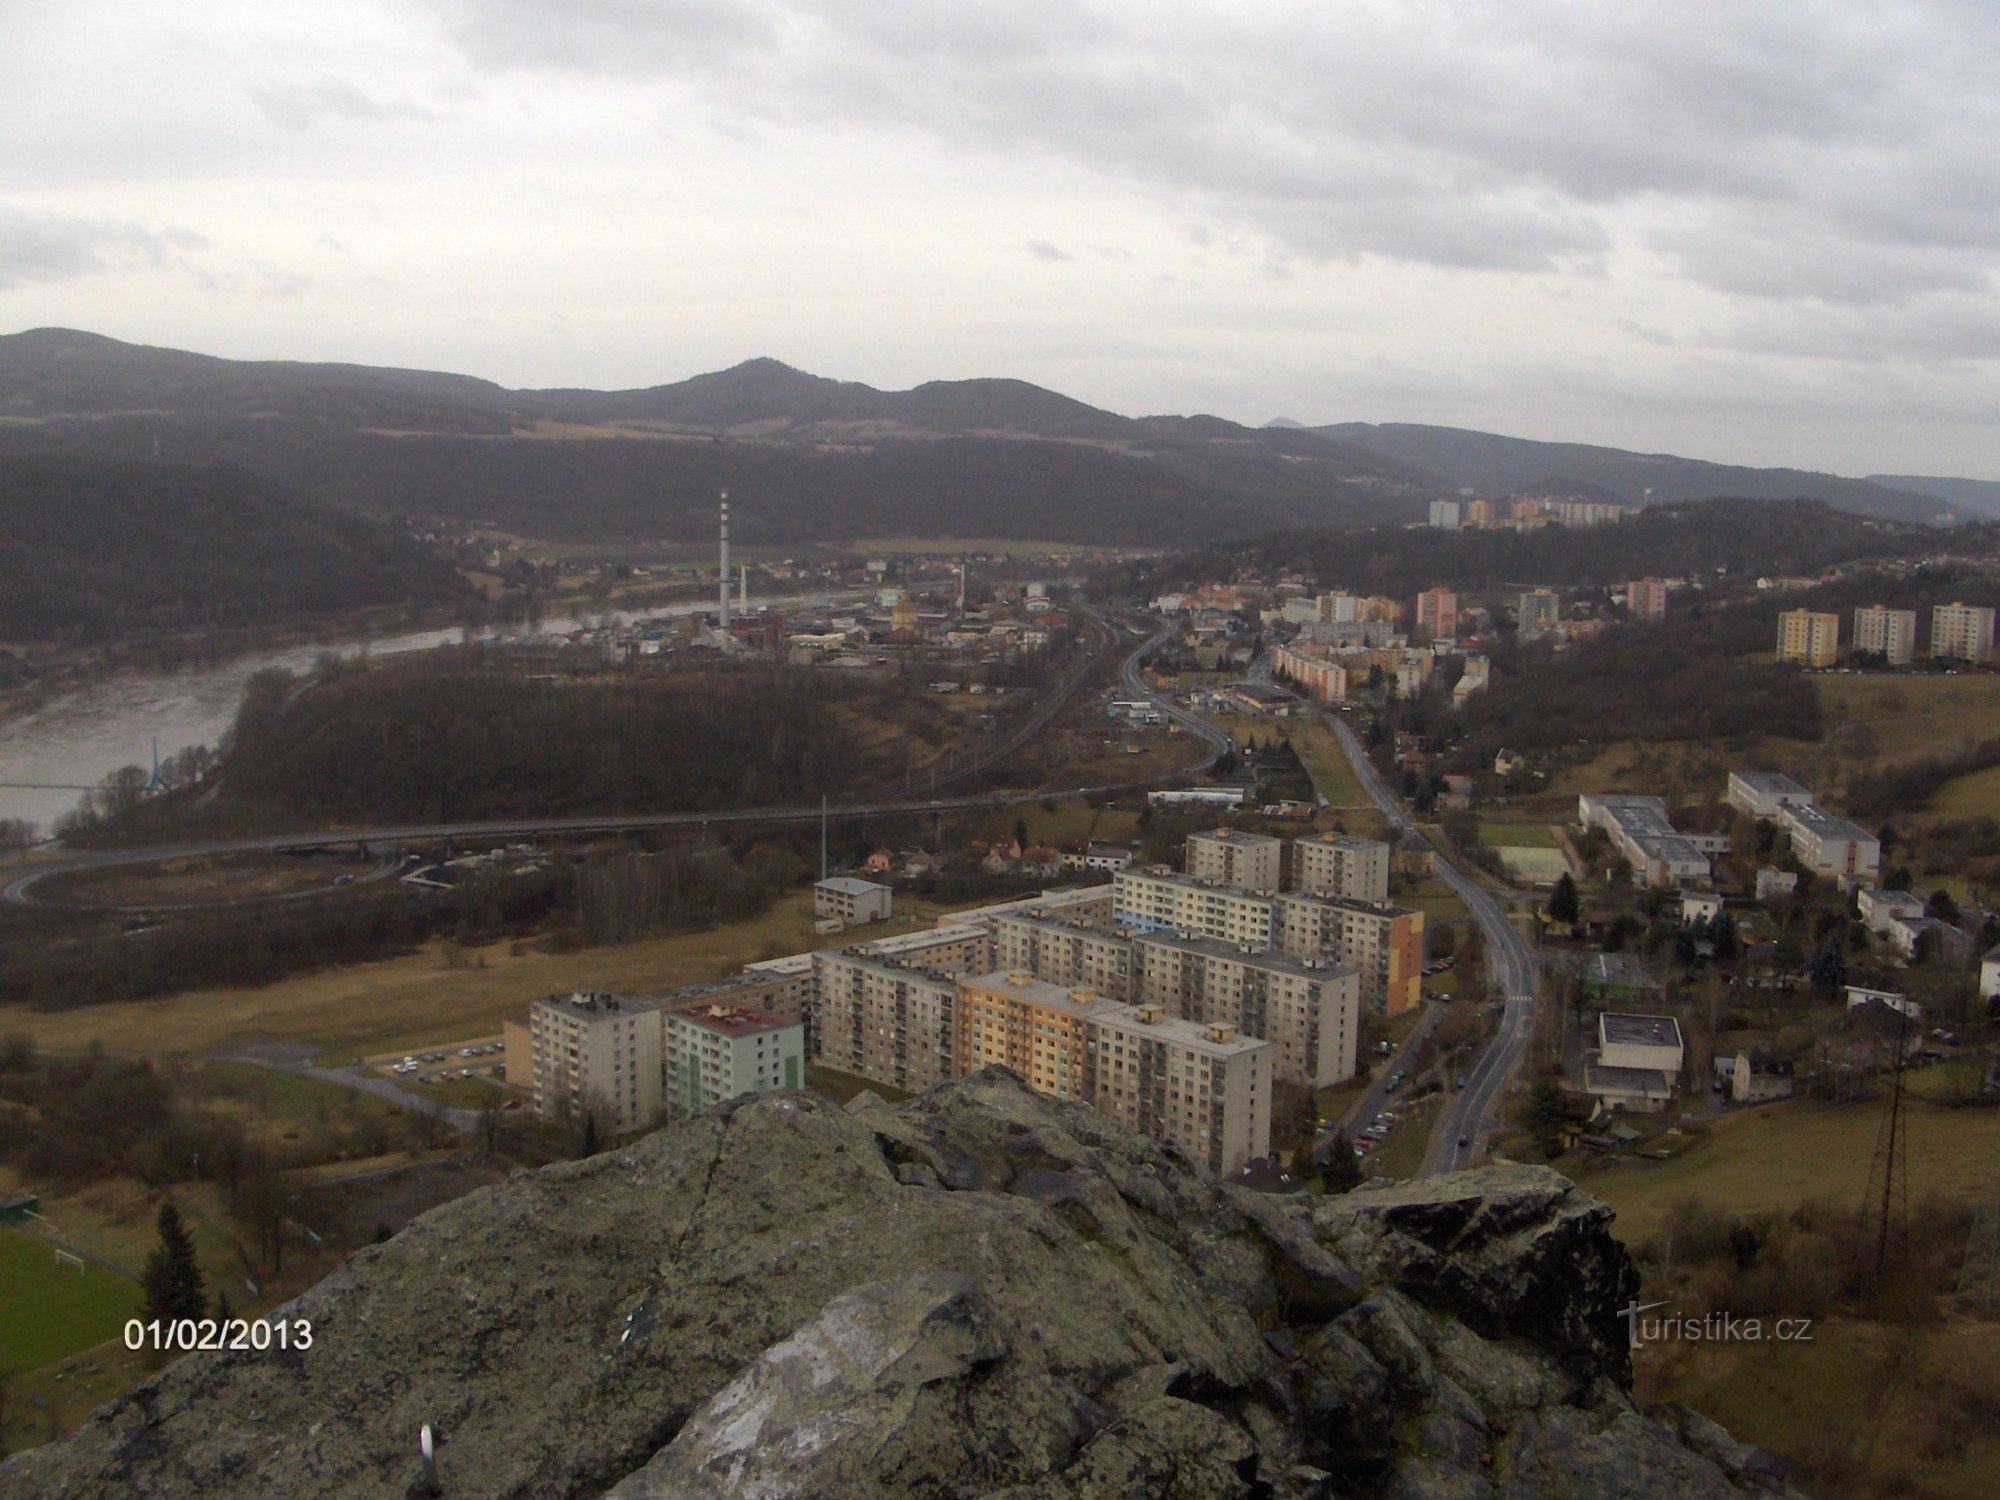 uitzicht vanaf de ruïnes van het Strážný-kasteel